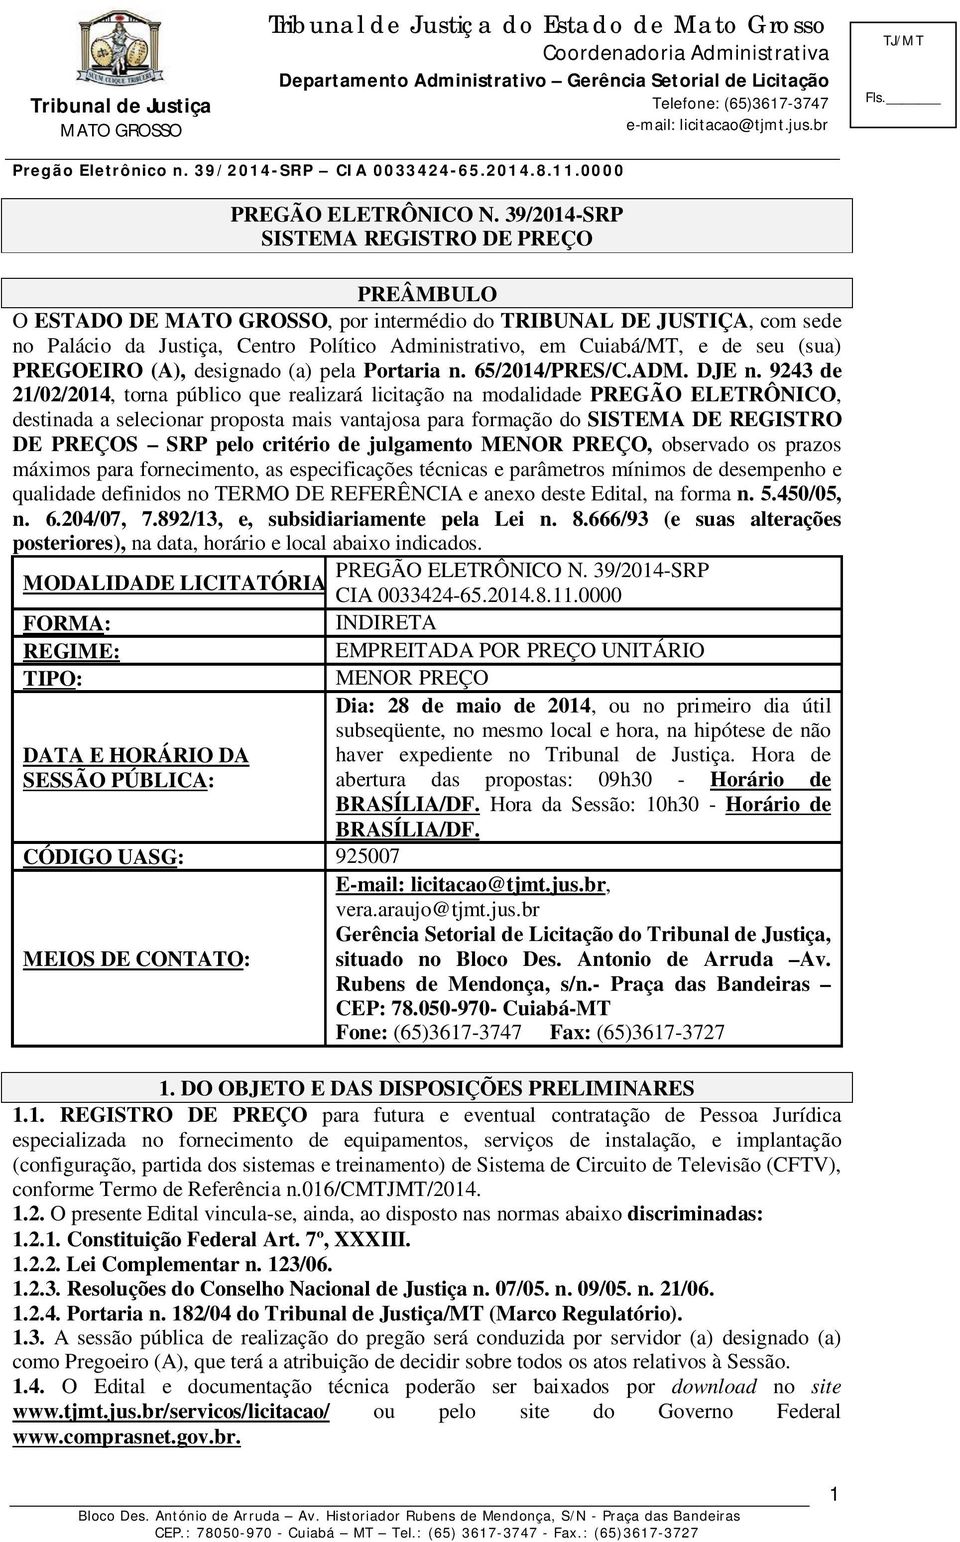 PREGOEIRO (A), designado (a) pela Portaria n. 65/2014/PRES/C.ADM. DJE n.